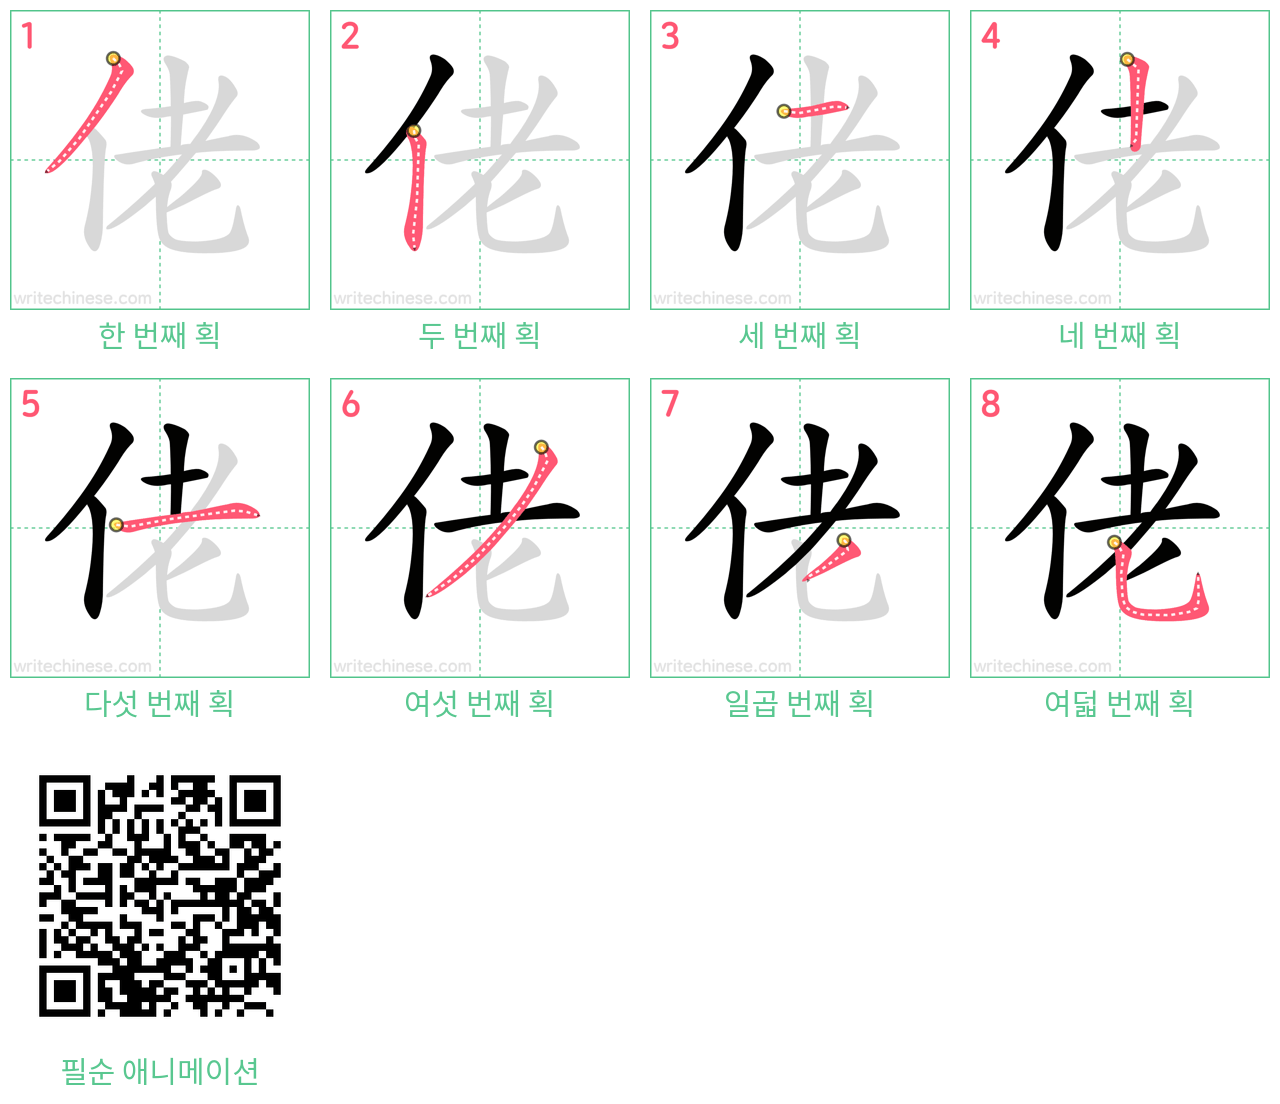 佬 step-by-step stroke order diagrams